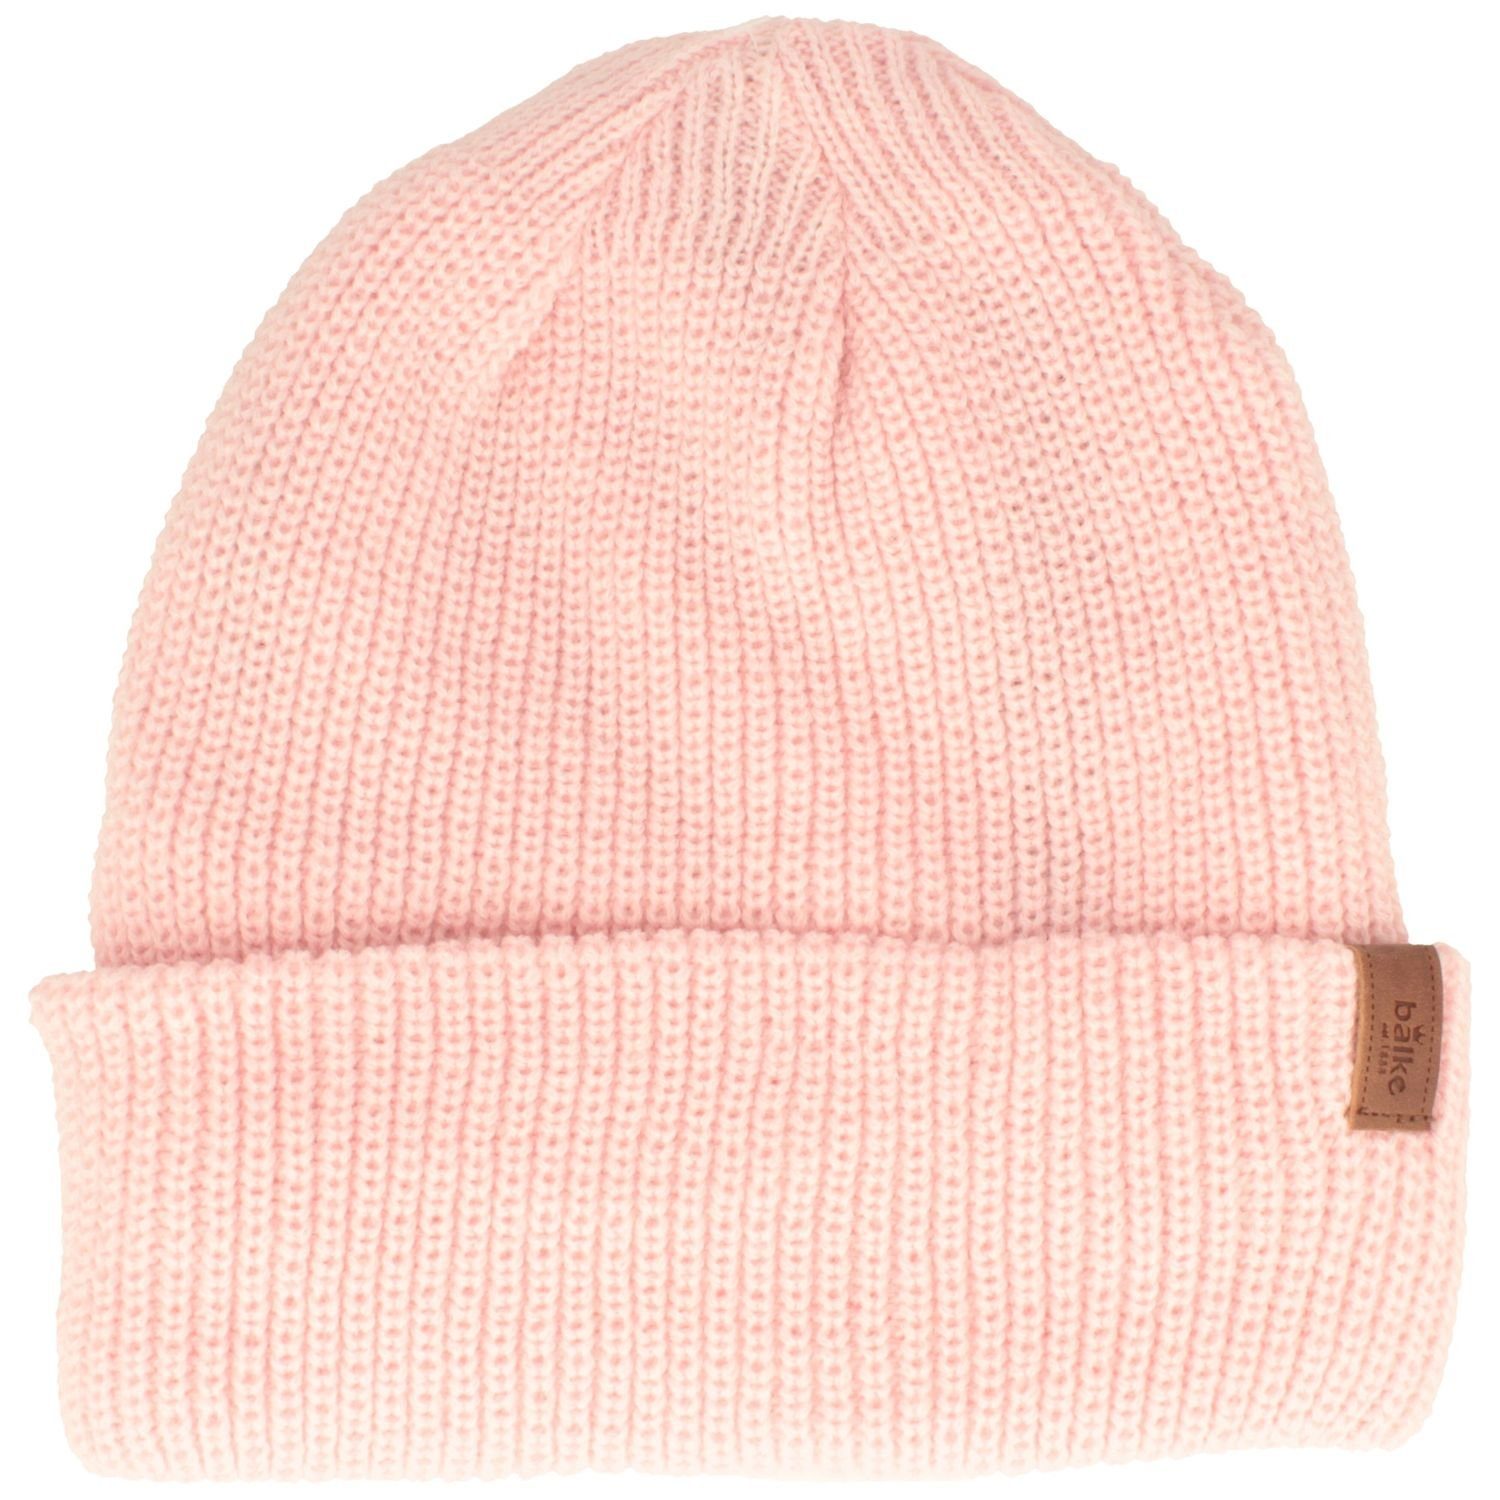 Balke Strickmütze sehr warme Grobstrick-Mütze mit Thinsulate-Ausstattung 110 rosa